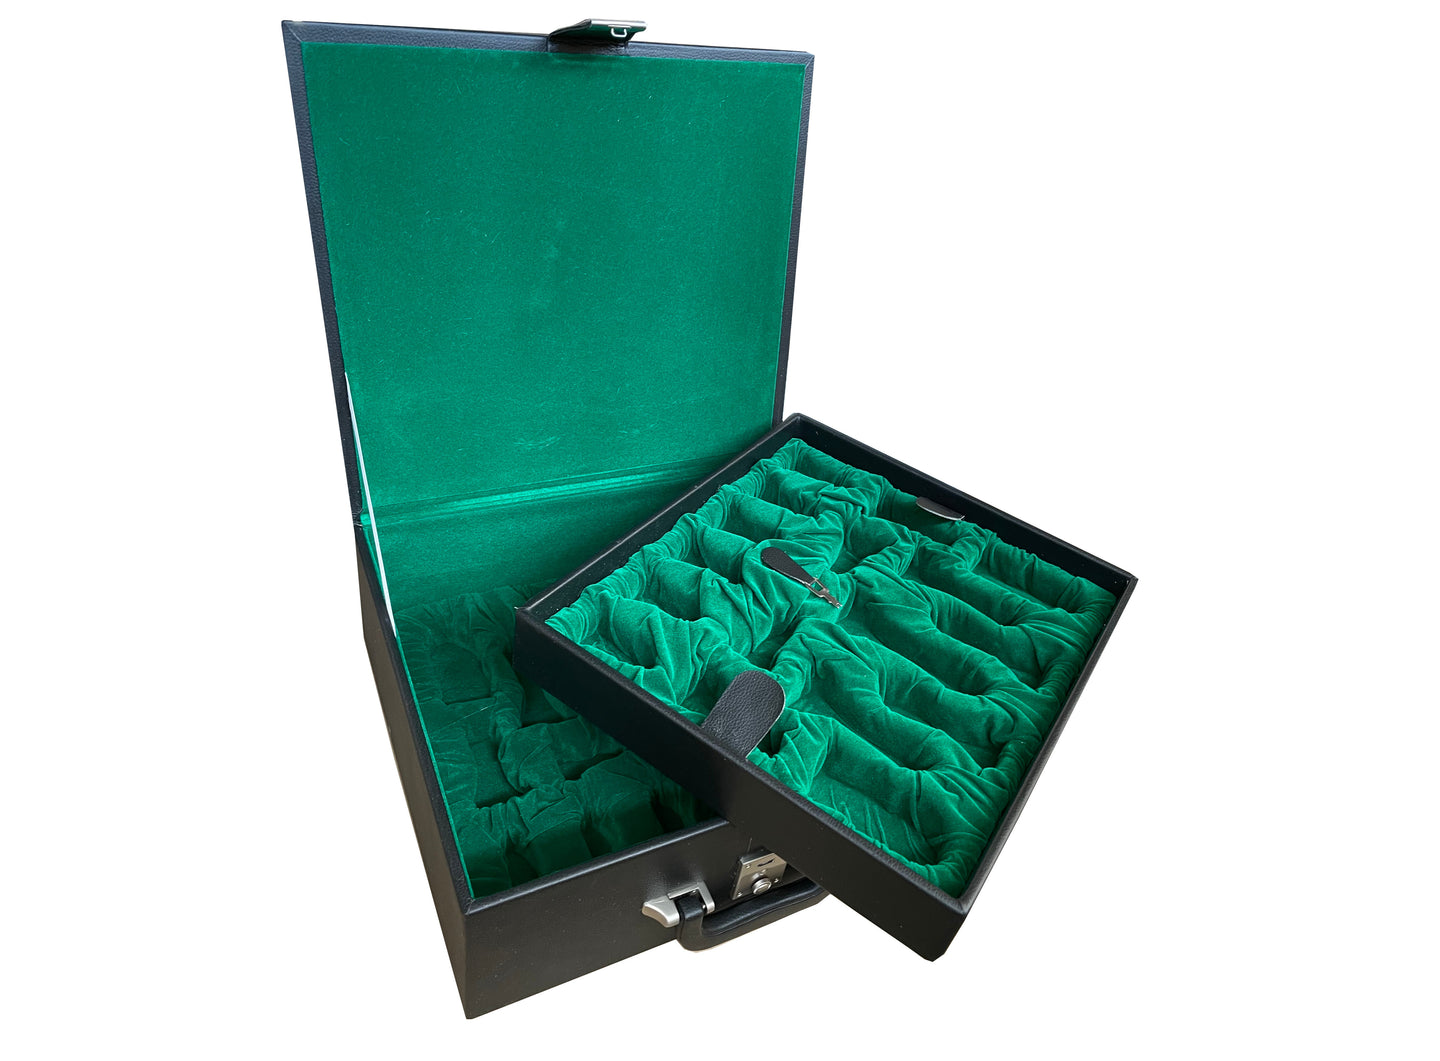 Masywna walizka na szachy - skrzynia do przechowywania figurek szachowych z podwójnym przedziałem z filcem